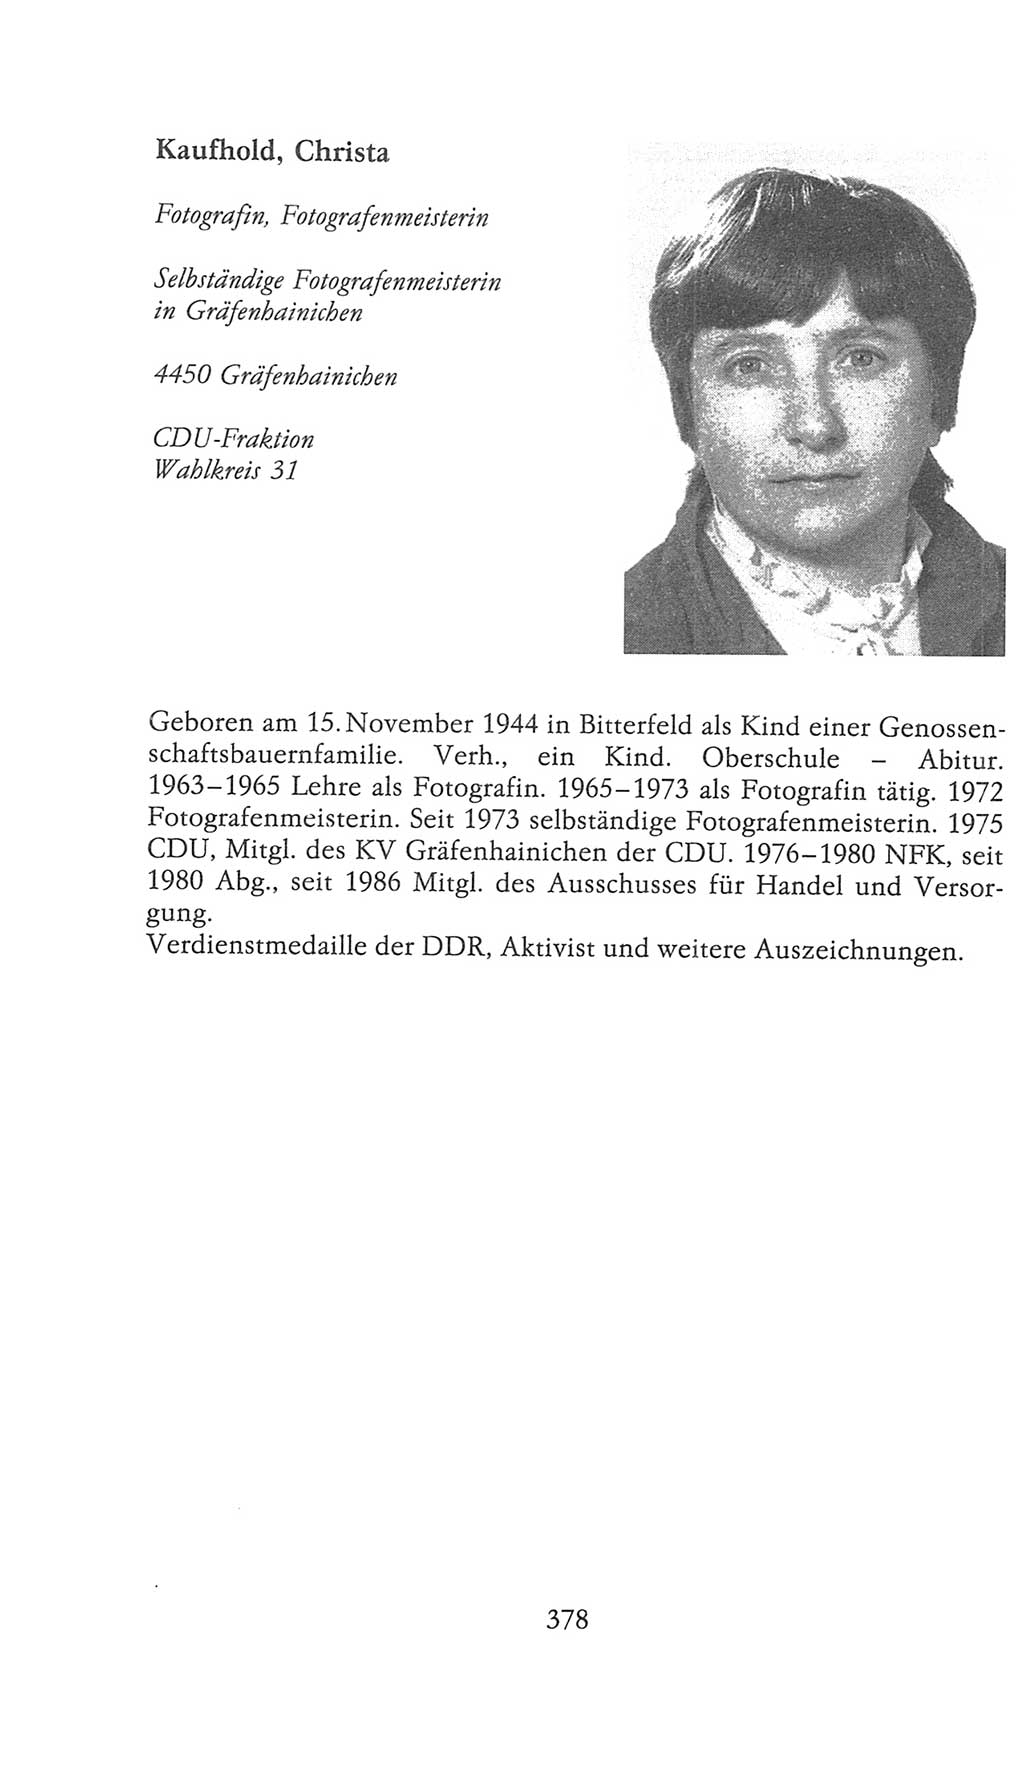 Volkskammer (VK) der Deutschen Demokratischen Republik (DDR), 9. Wahlperiode 1986-1990, Seite 378 (VK. DDR 9. WP. 1986-1990, S. 378)